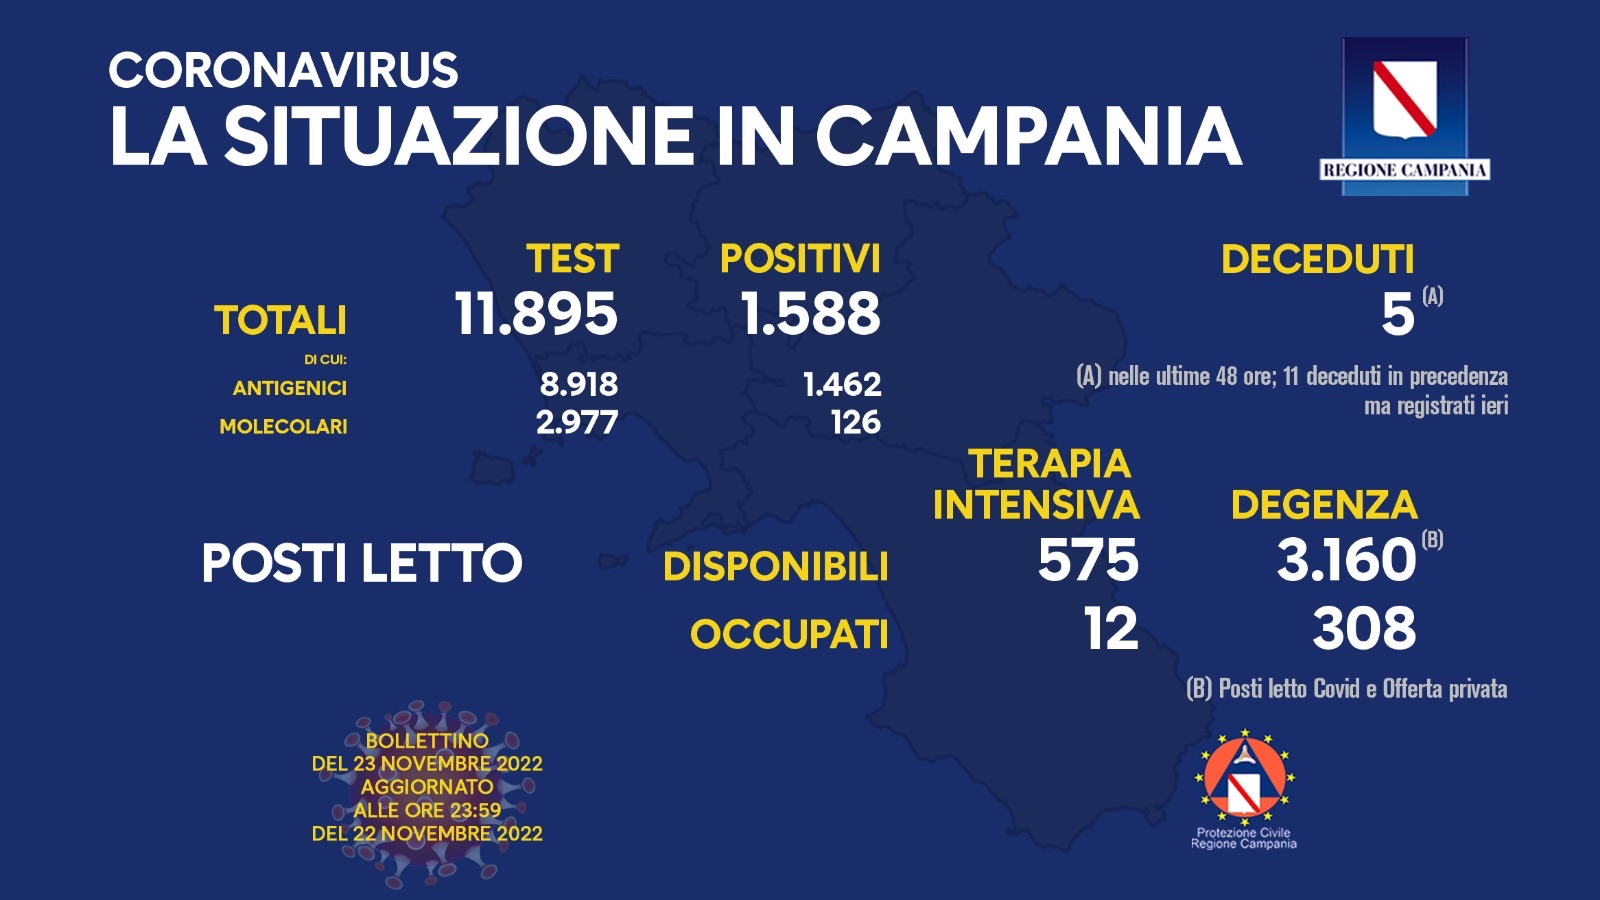 Regione Campania: Coronavirus, Unità di Crisi, Bollettino, 1.588 casi positivi, 5 decessi